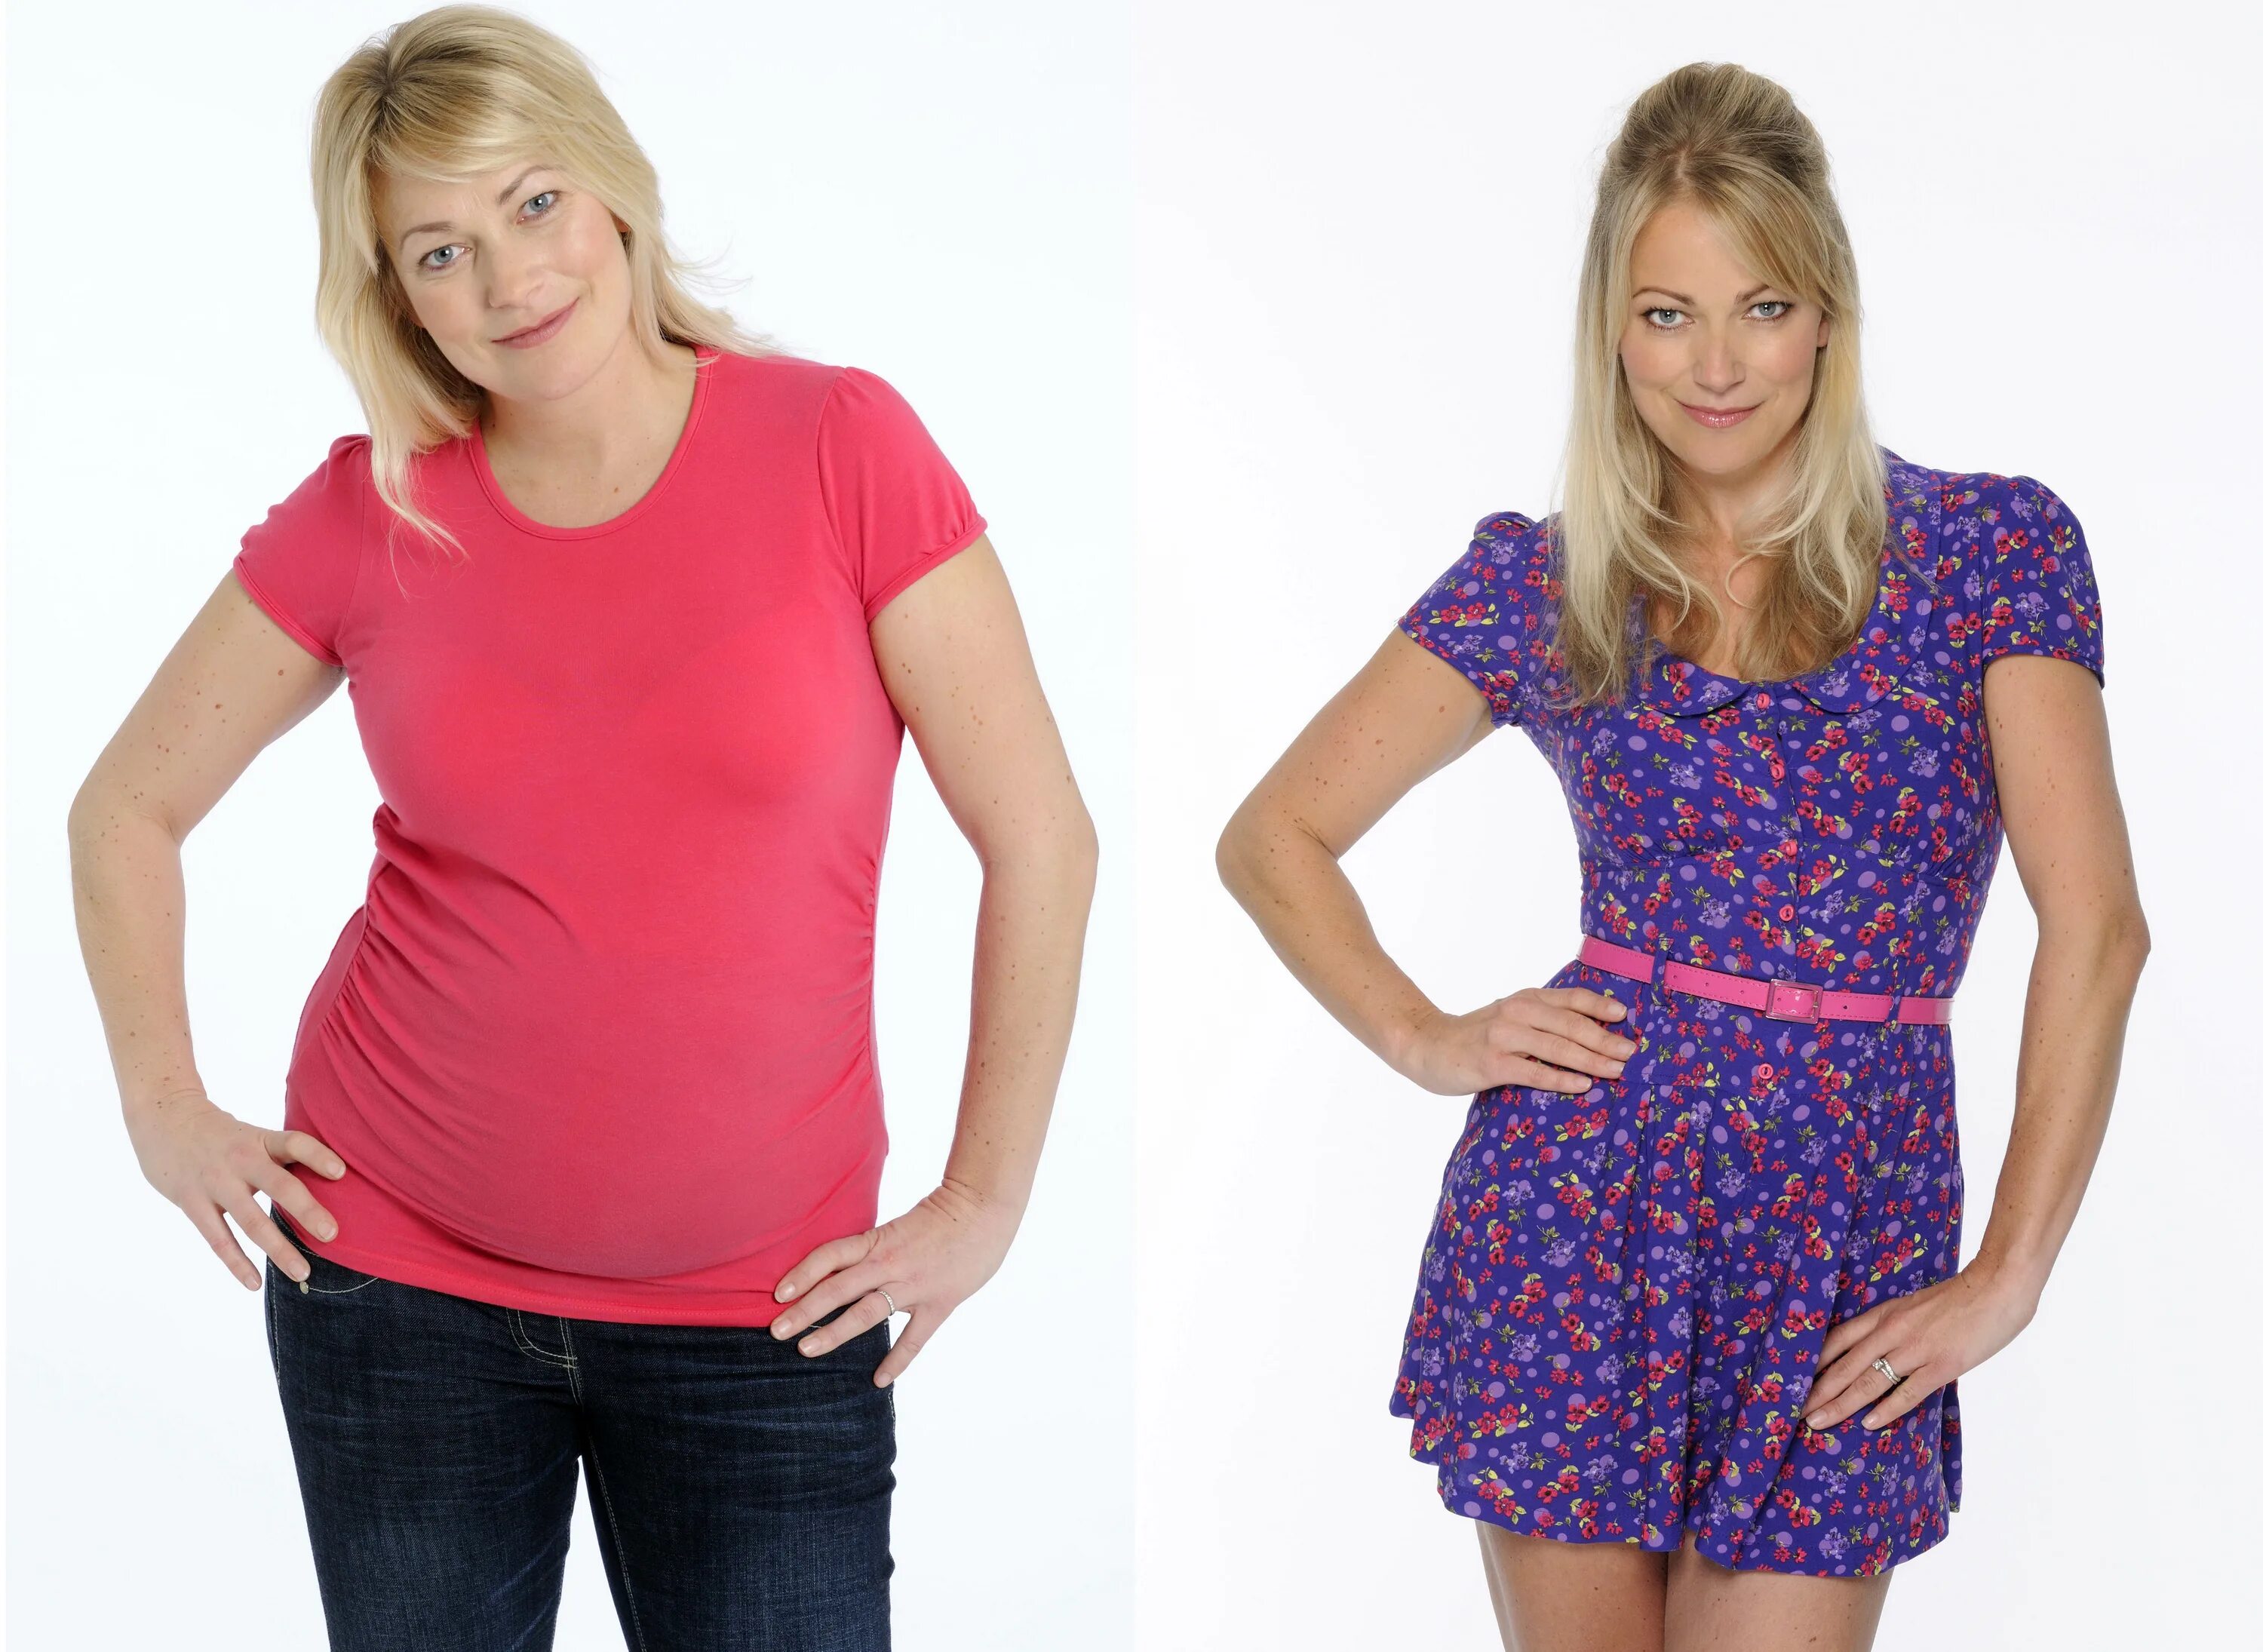 Похудение до и после. Одежда для похудения. Женщина в одежде до похудения. Похудение до и после фото.